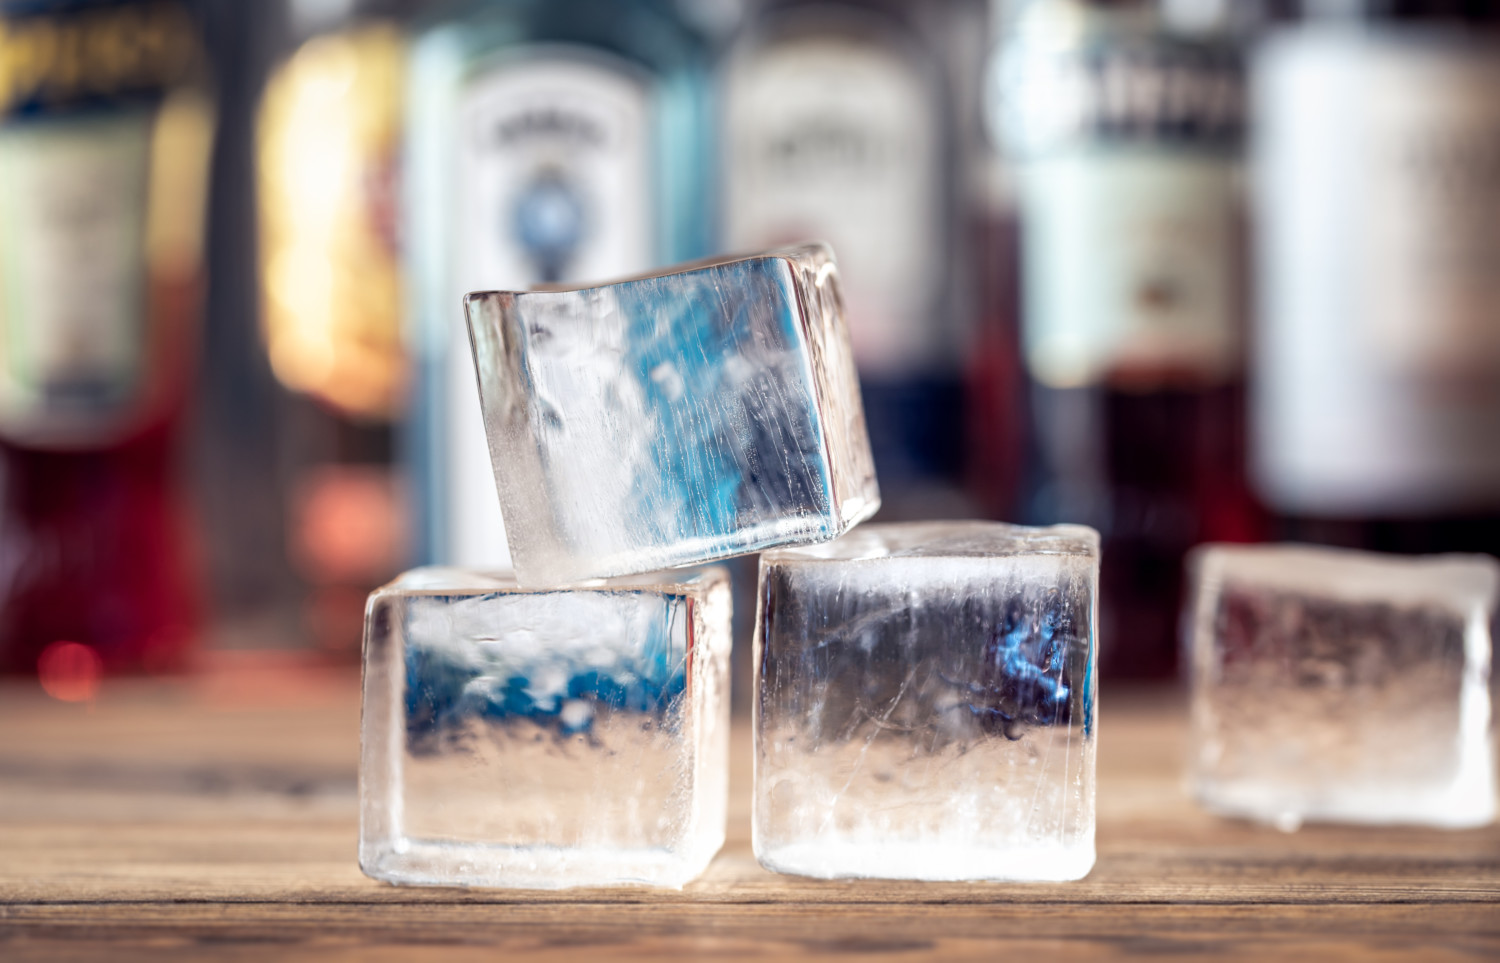 Crystal clear ice cubes on bar